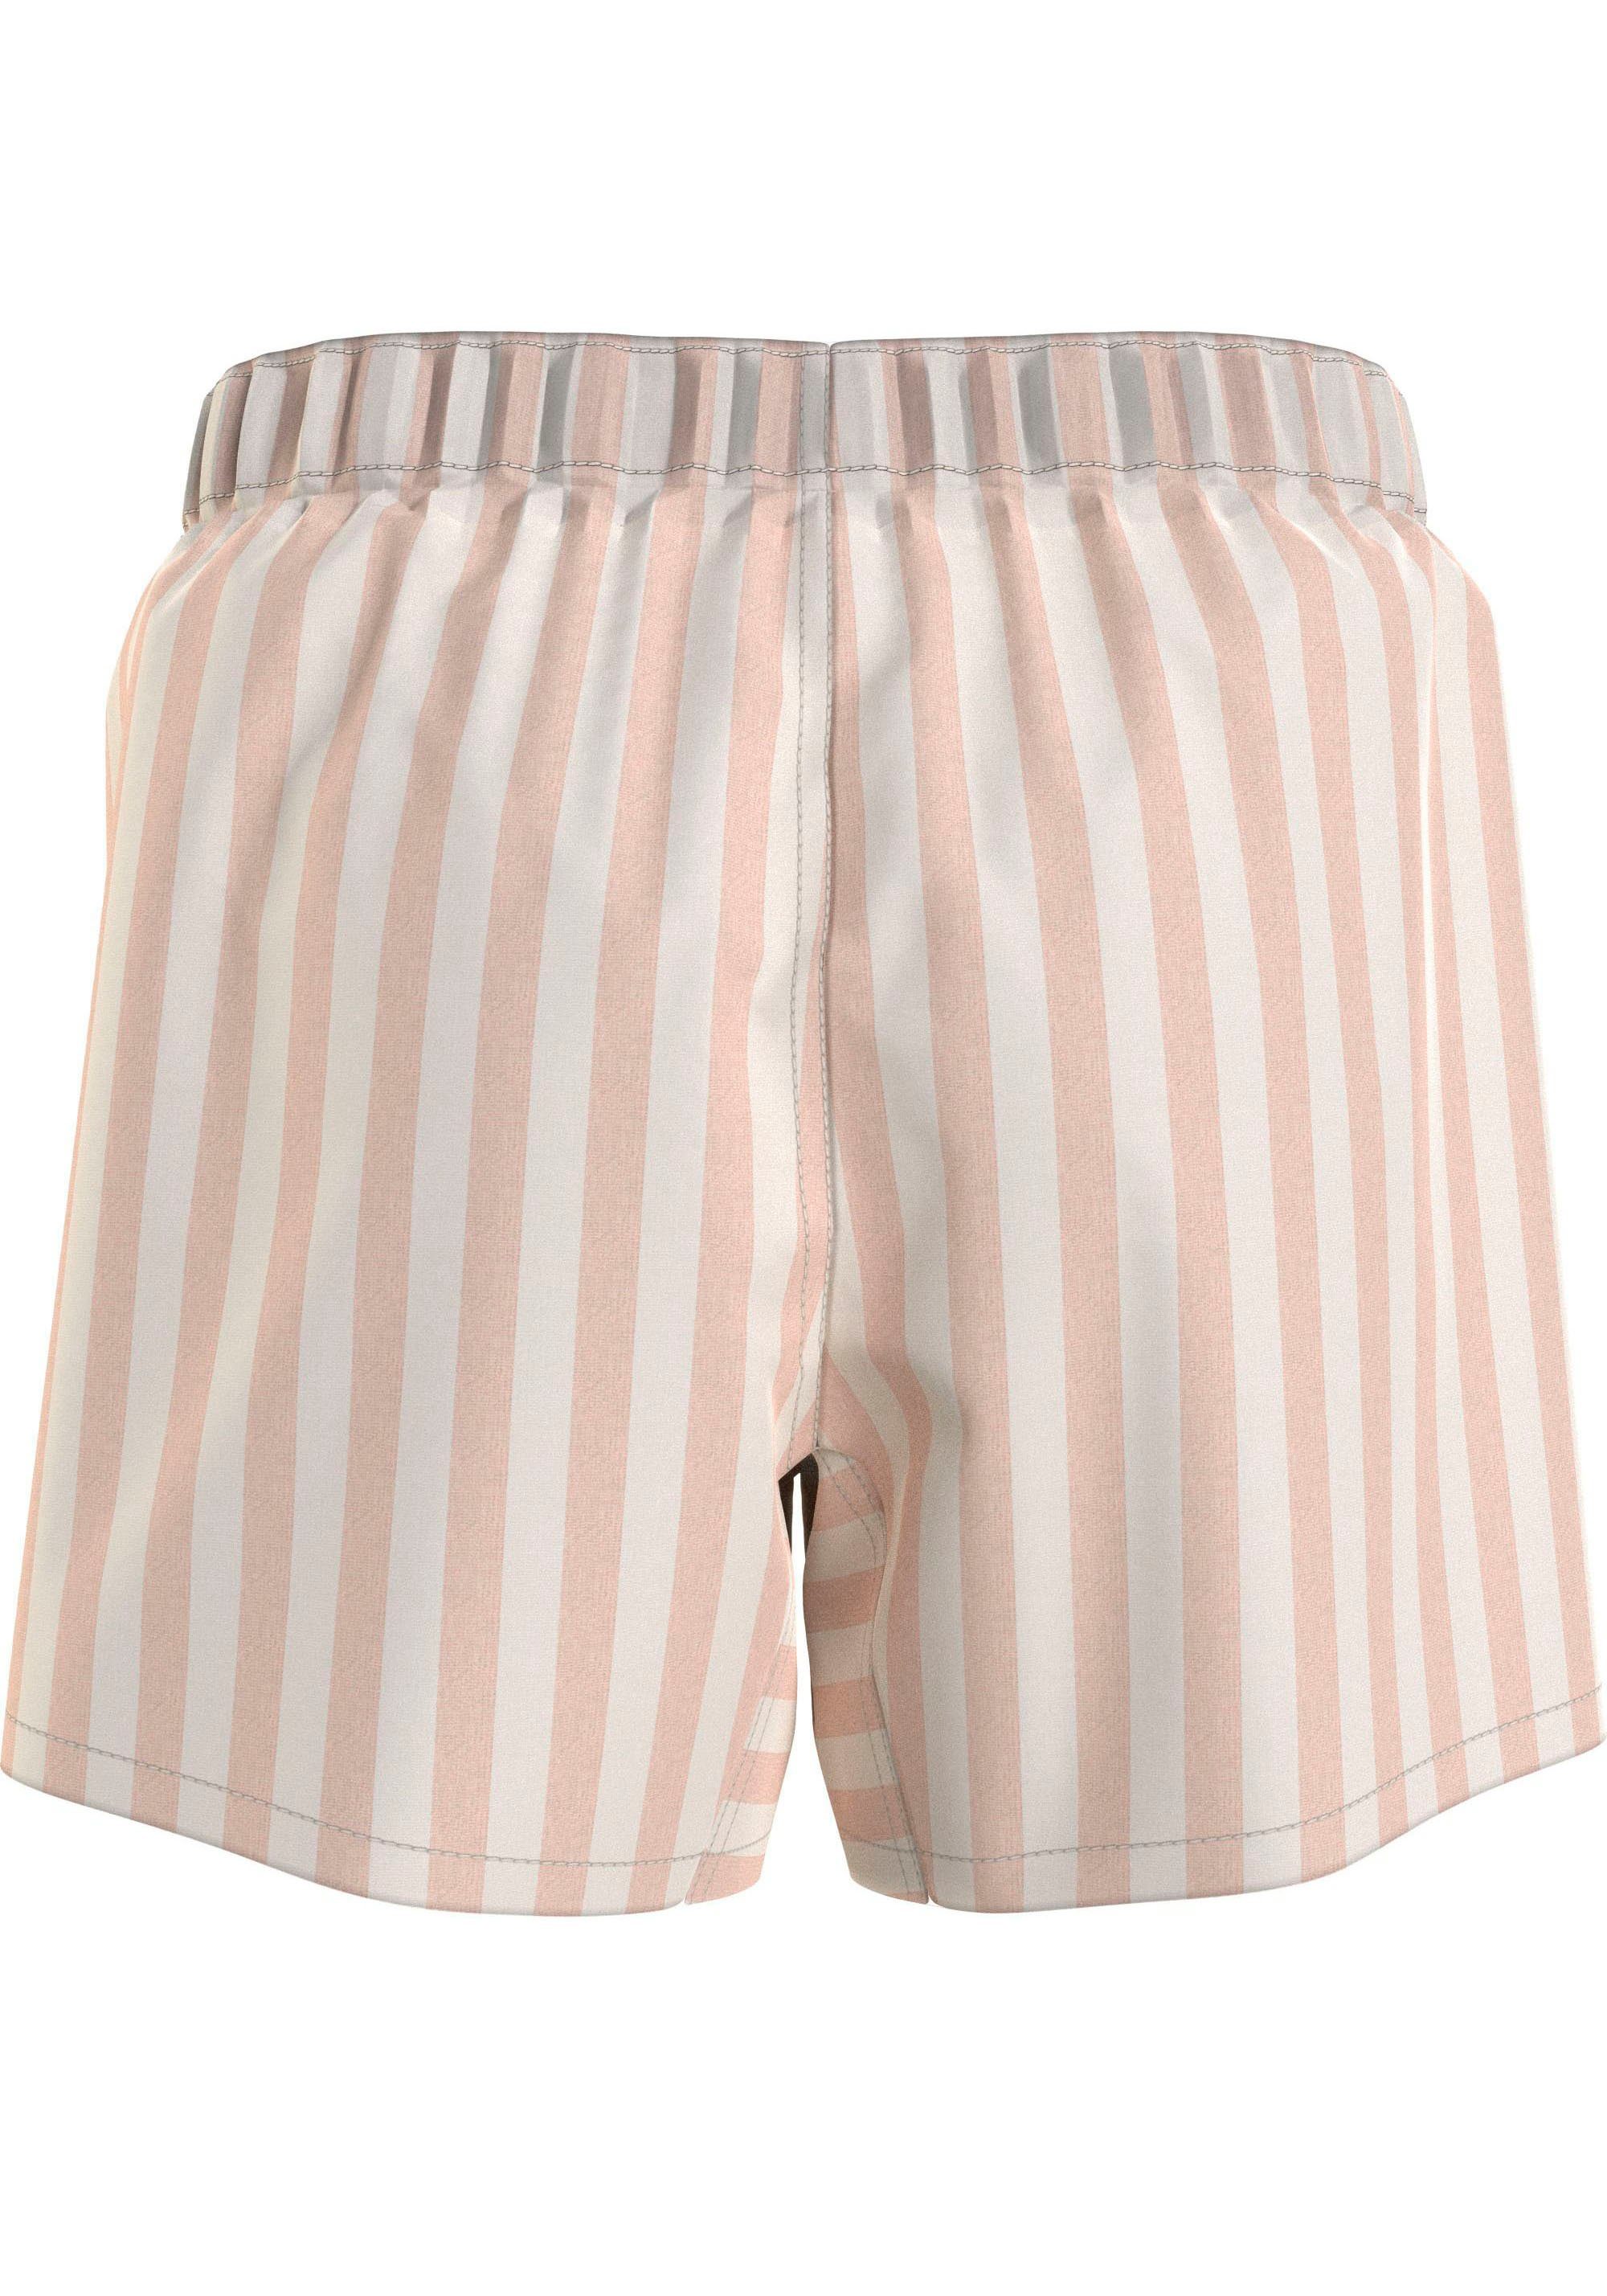 Calvin Klein Underwear SLIM Markenlabel BOXER auf mit Pyjamashorts dem Bund beige